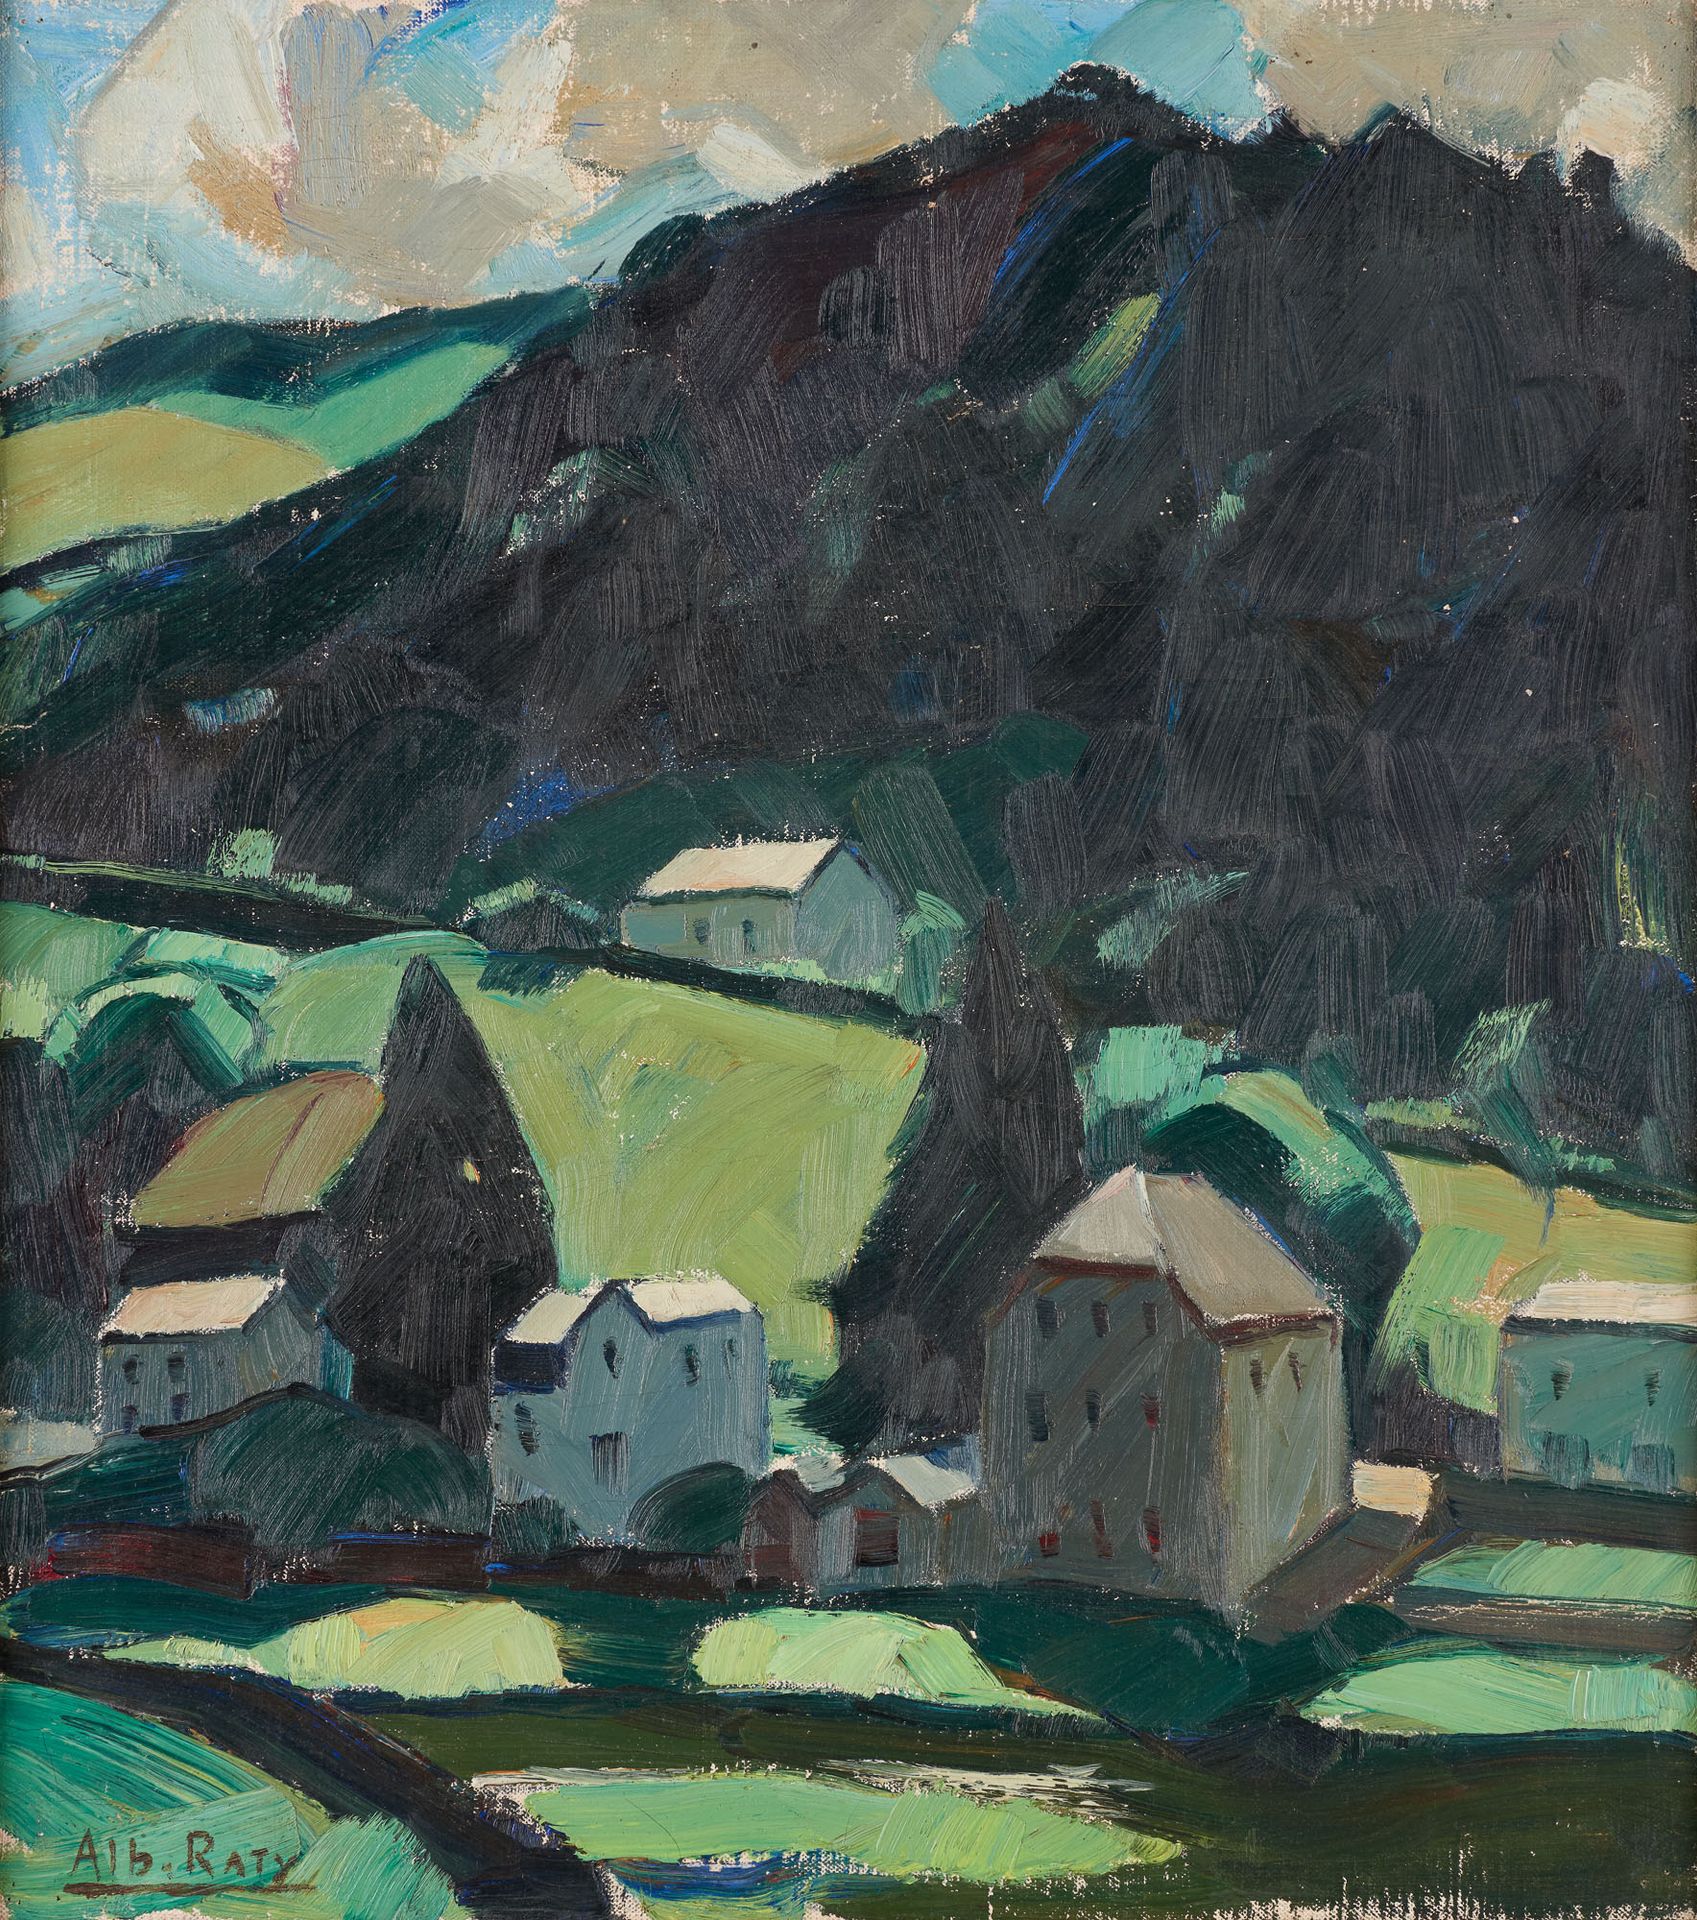 Albert RATY École belge (1889-1970) Olio su tela: Veduta di tuffo su Bouillon.

&hellip;